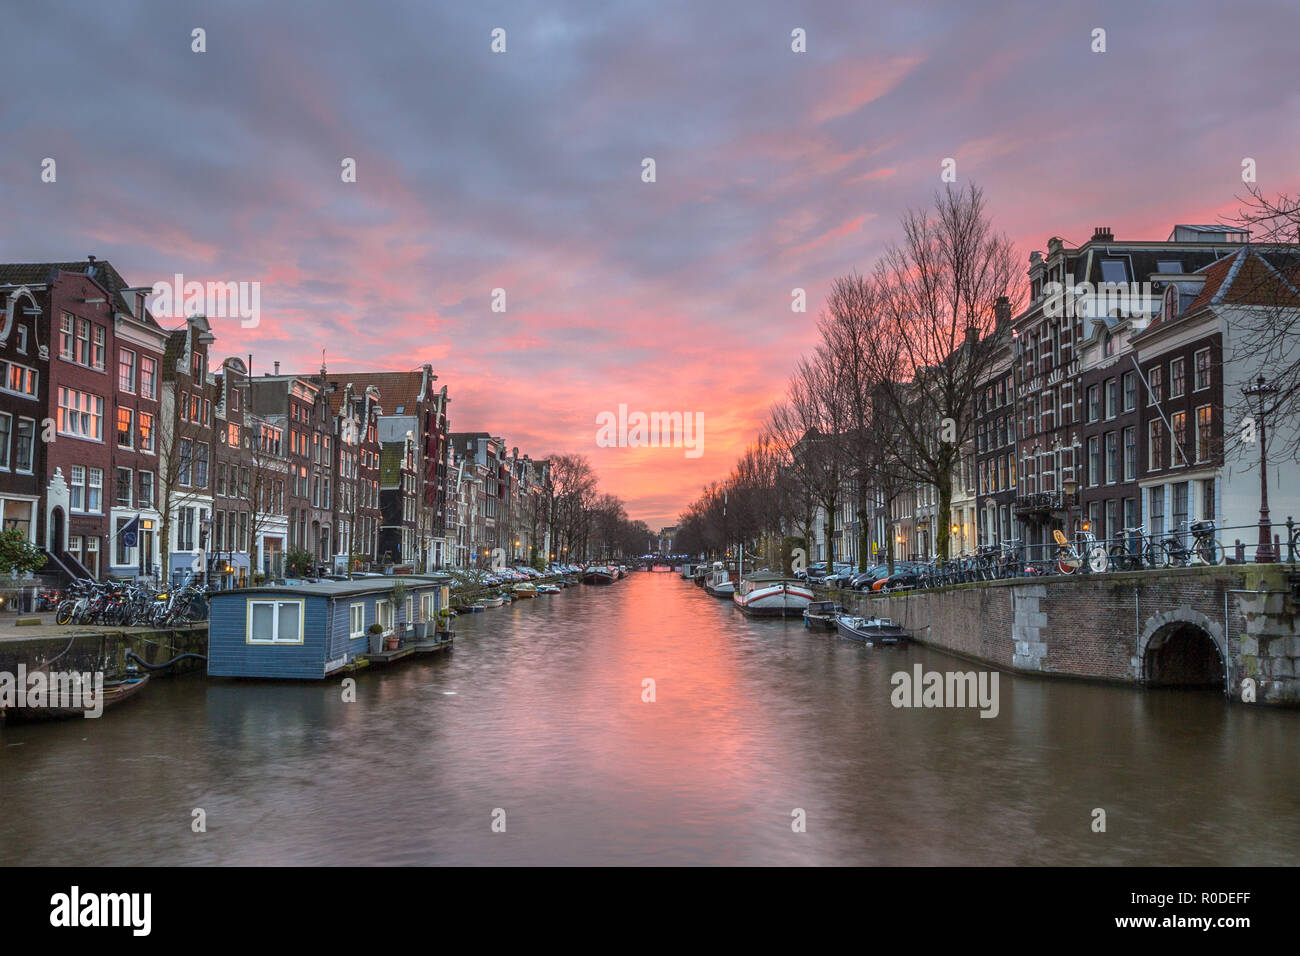 Tramonto colorato su Herengracht con house boat e le tradizionali case di canale nel sito Patrimonio Mondiale dell'UNESCO di Amsterdam Foto Stock